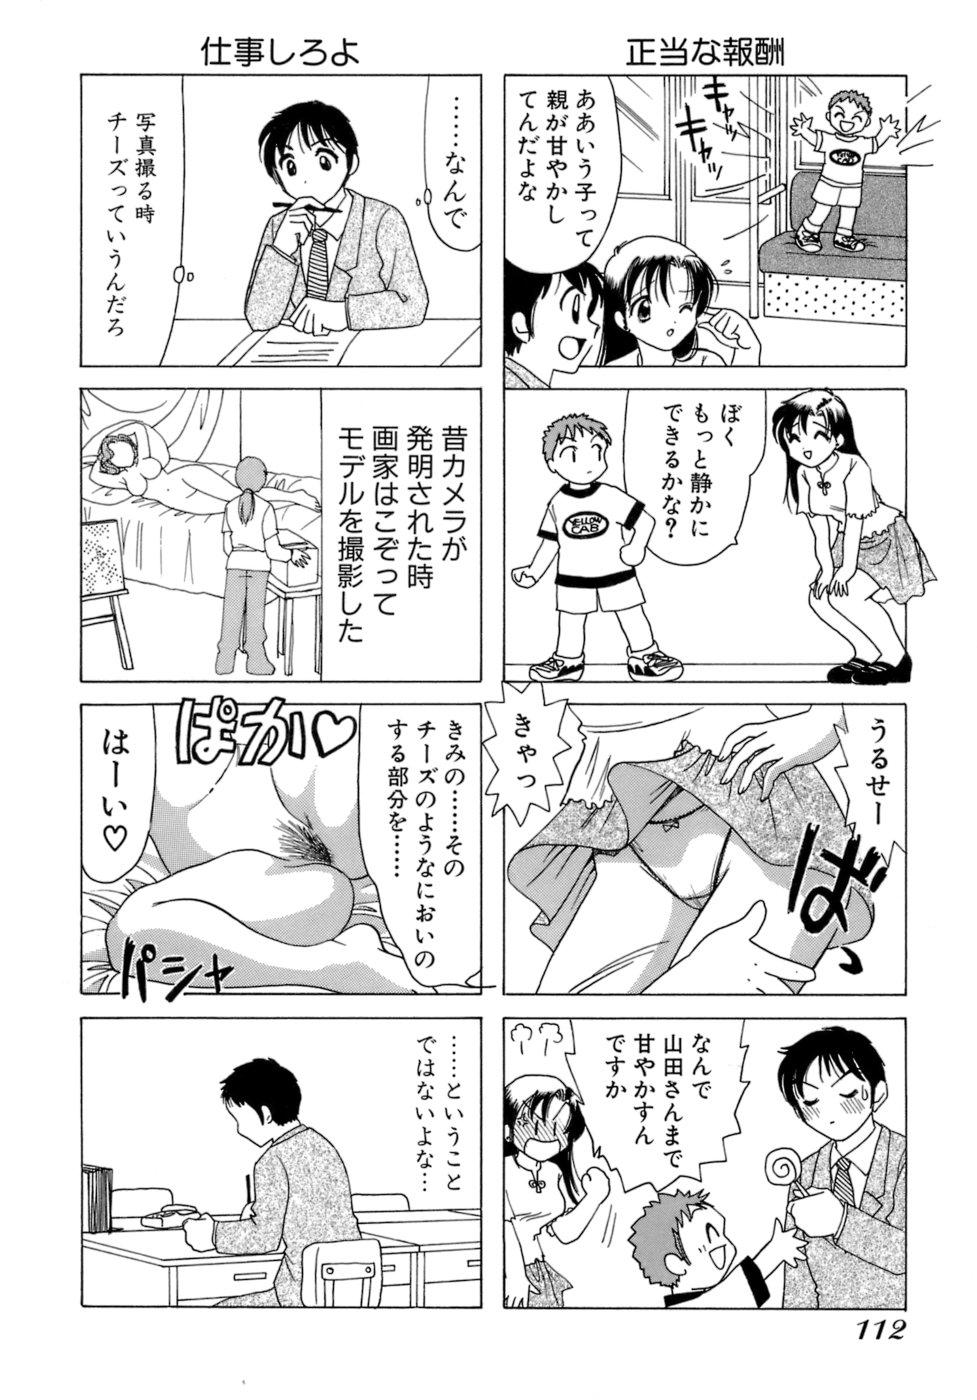 Eriko-kun, Ocha!! Vol.01 114